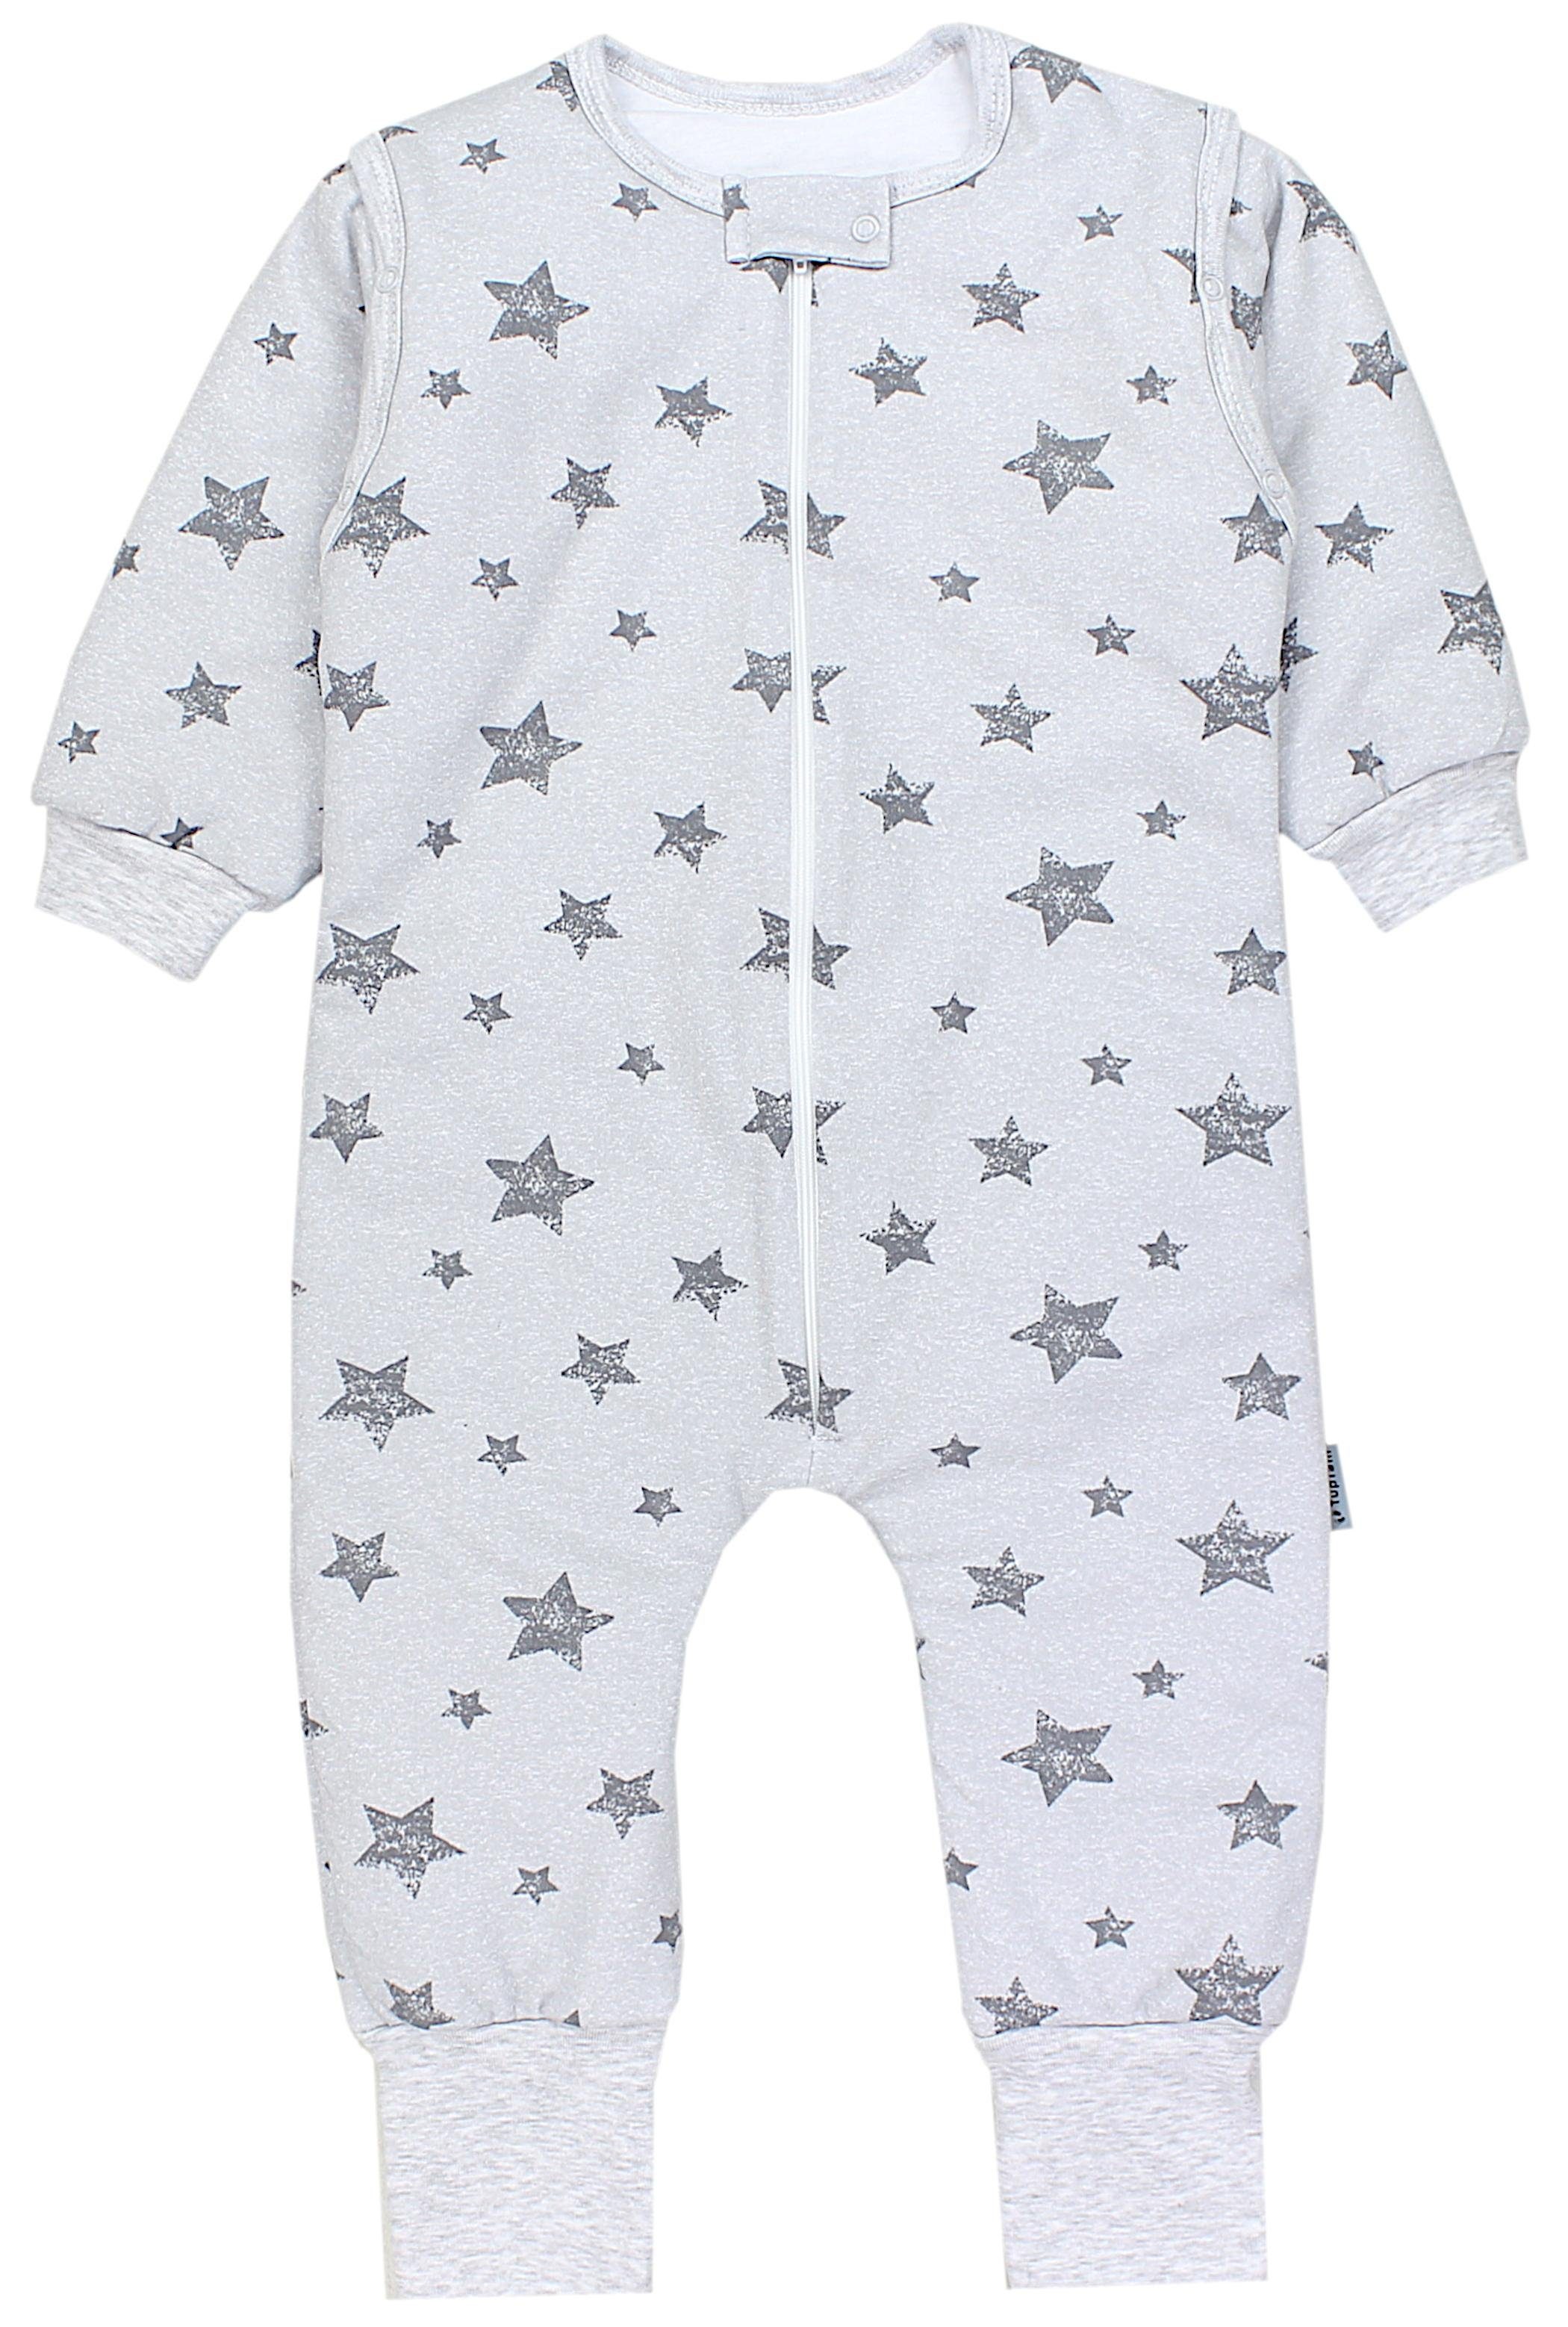 TupTam Babyschlafsack mit Beinen und Ärmel Winter OEKO-TEX zertifiziert Unisex Sterne Grau